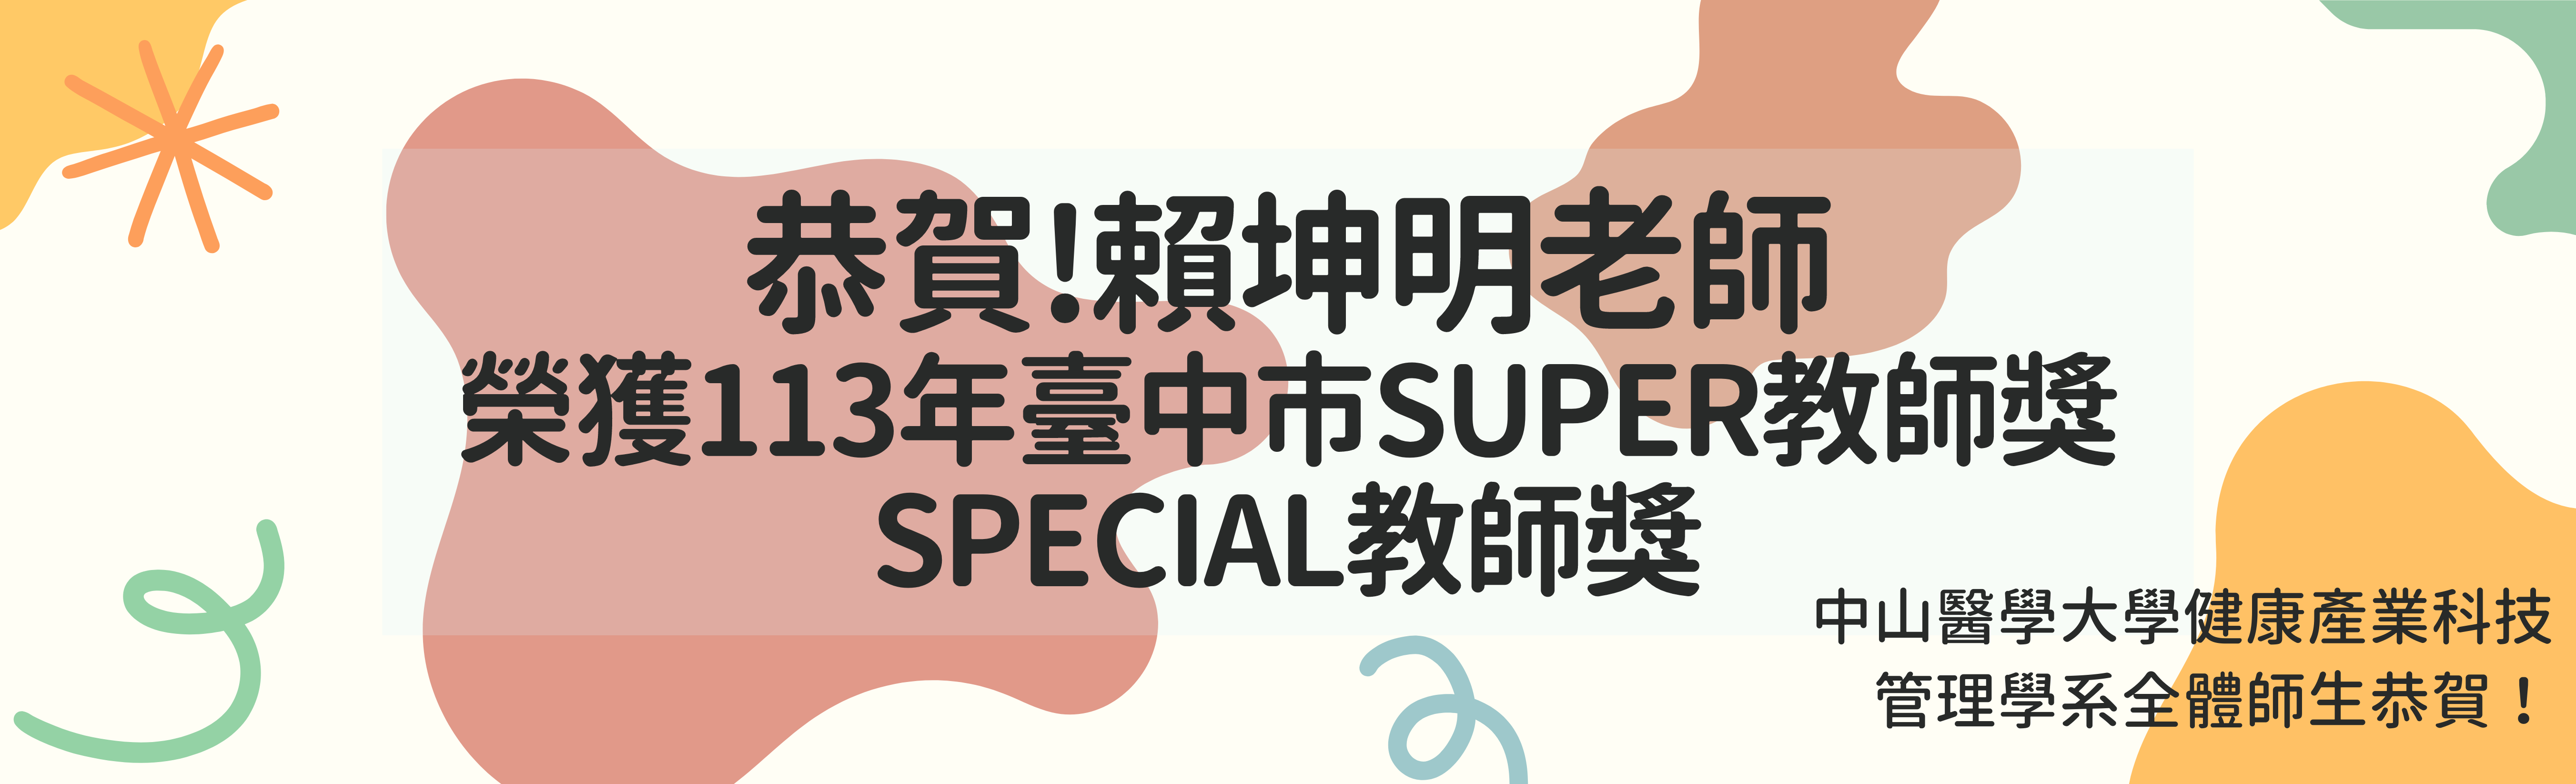 賴坤明老師 榮獲113年臺中市SUPER教師獎 SPECIAL教師獎